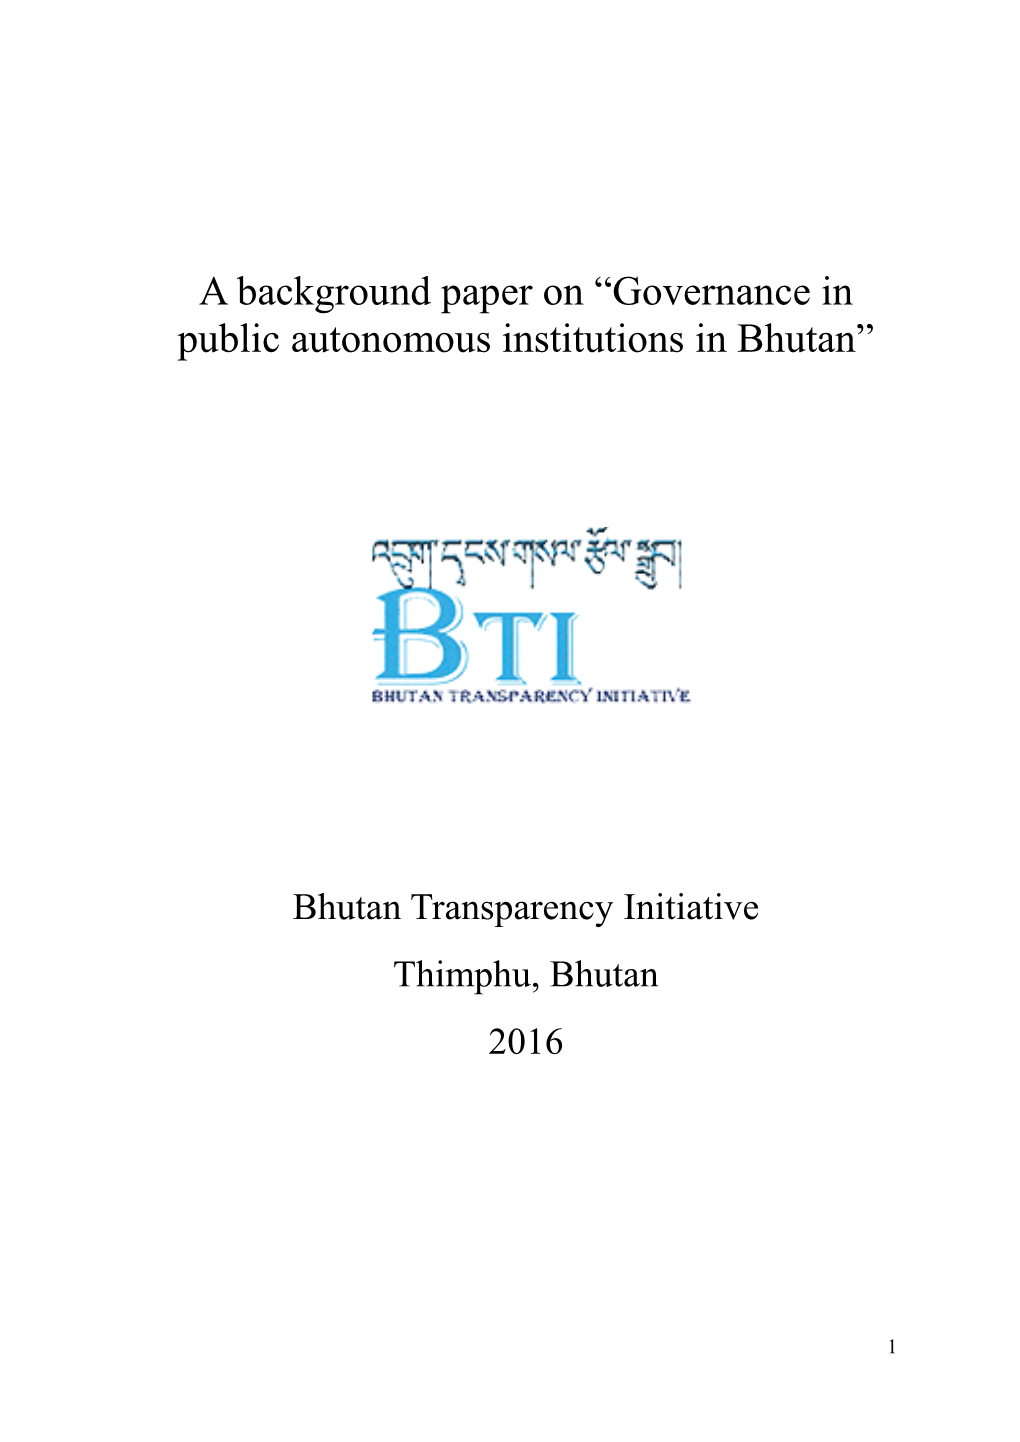 Governance in Public Autonomous Institutions in Bhutan”